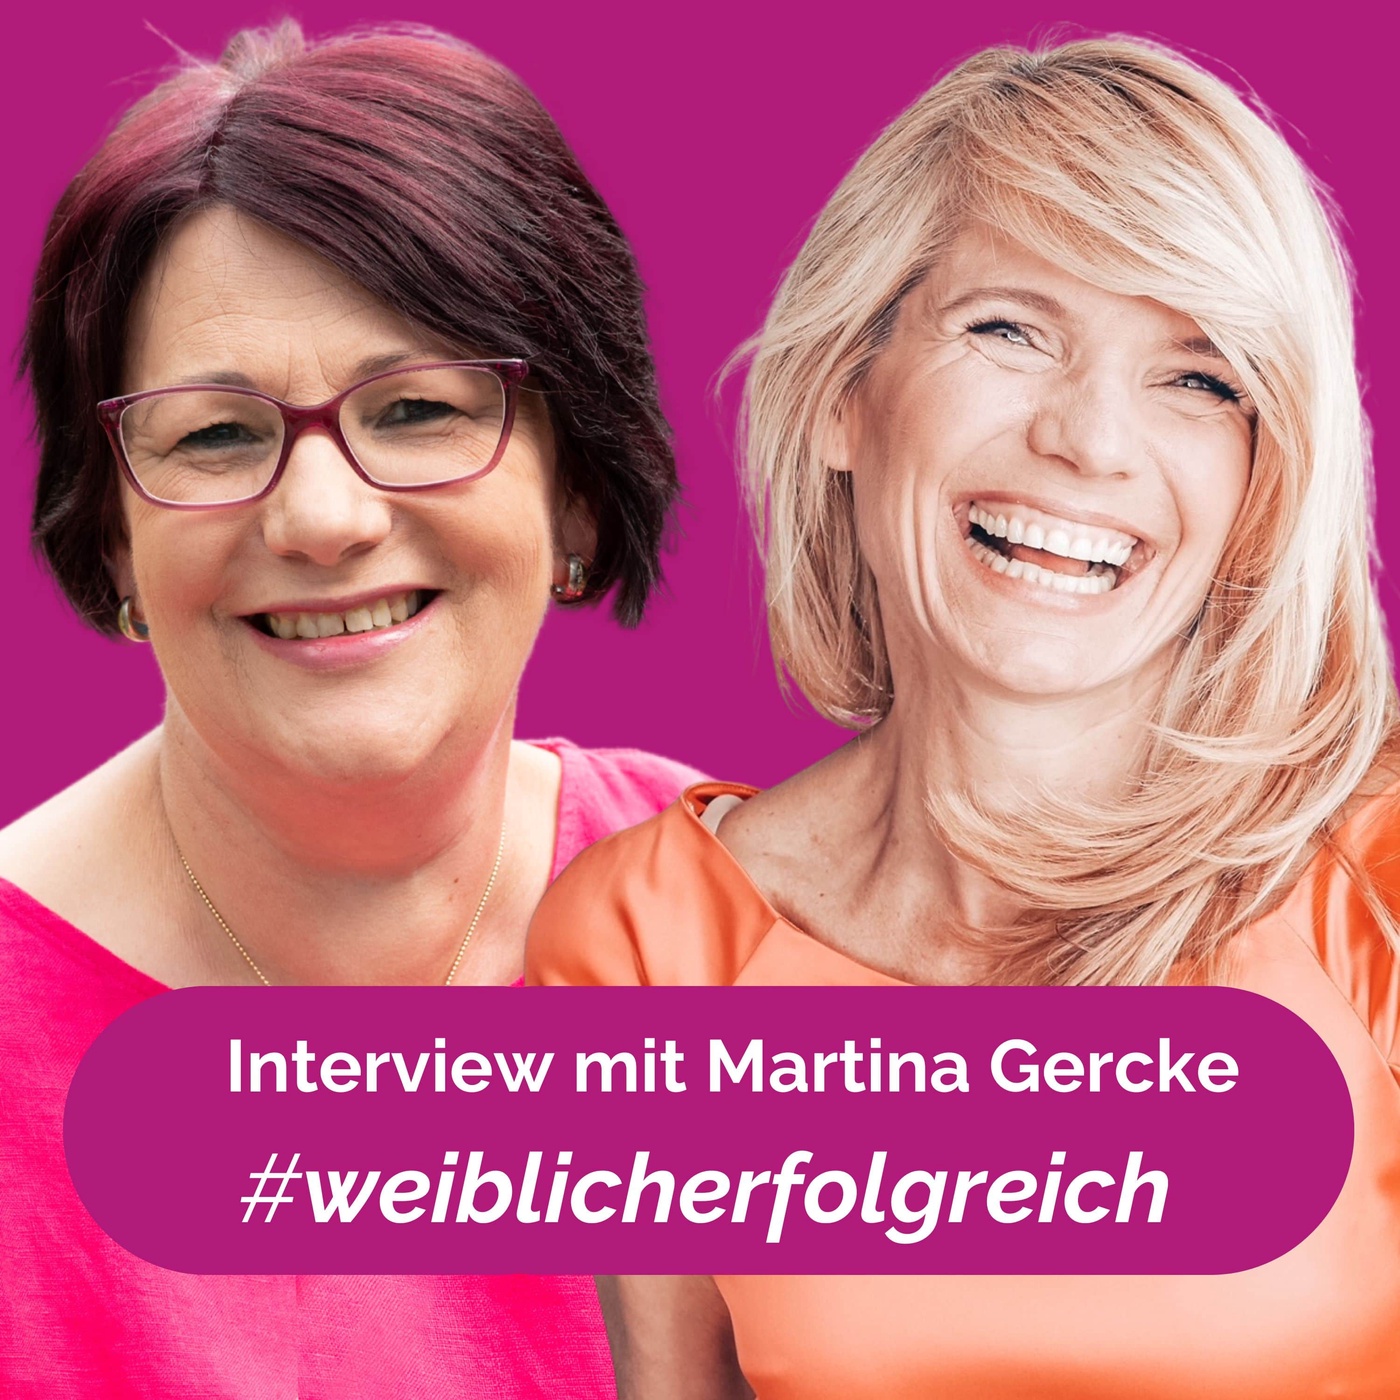 Dppelkarriere als Autorin und Flugbegleiterin: Interview mit Martina Gercke | PP33